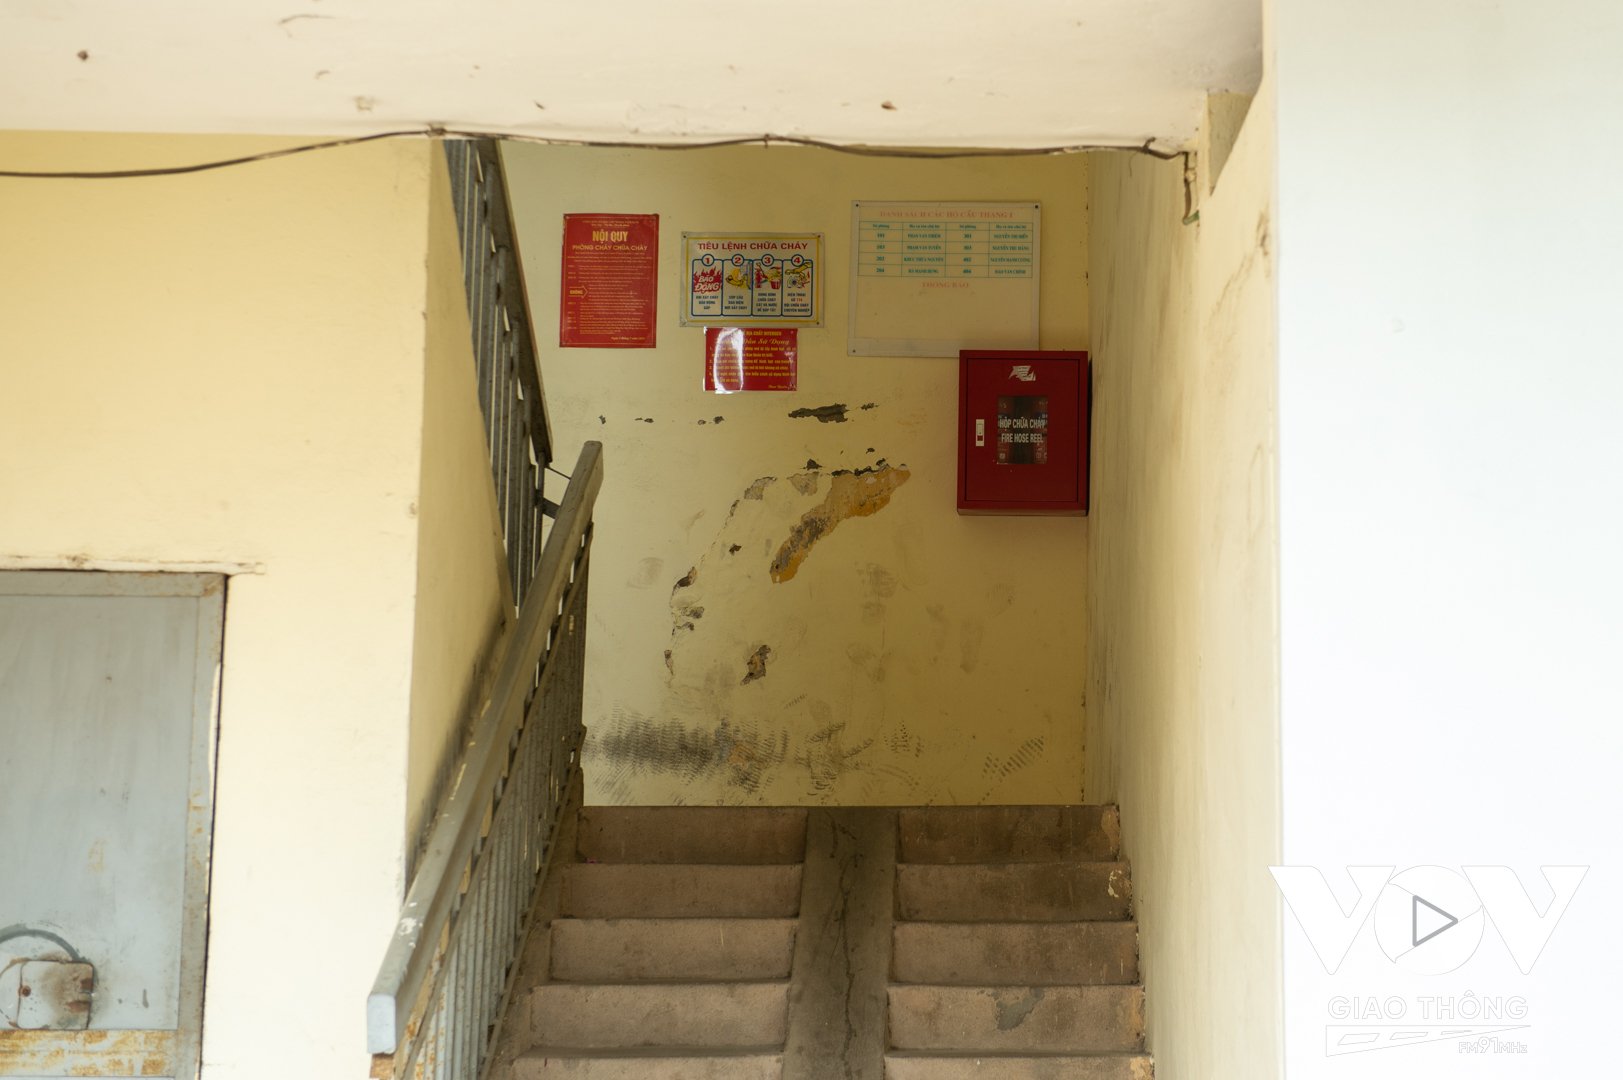 Ở hành lang các tầng đều có bình cứu hỏa, tiêu lệnh chữa cháy